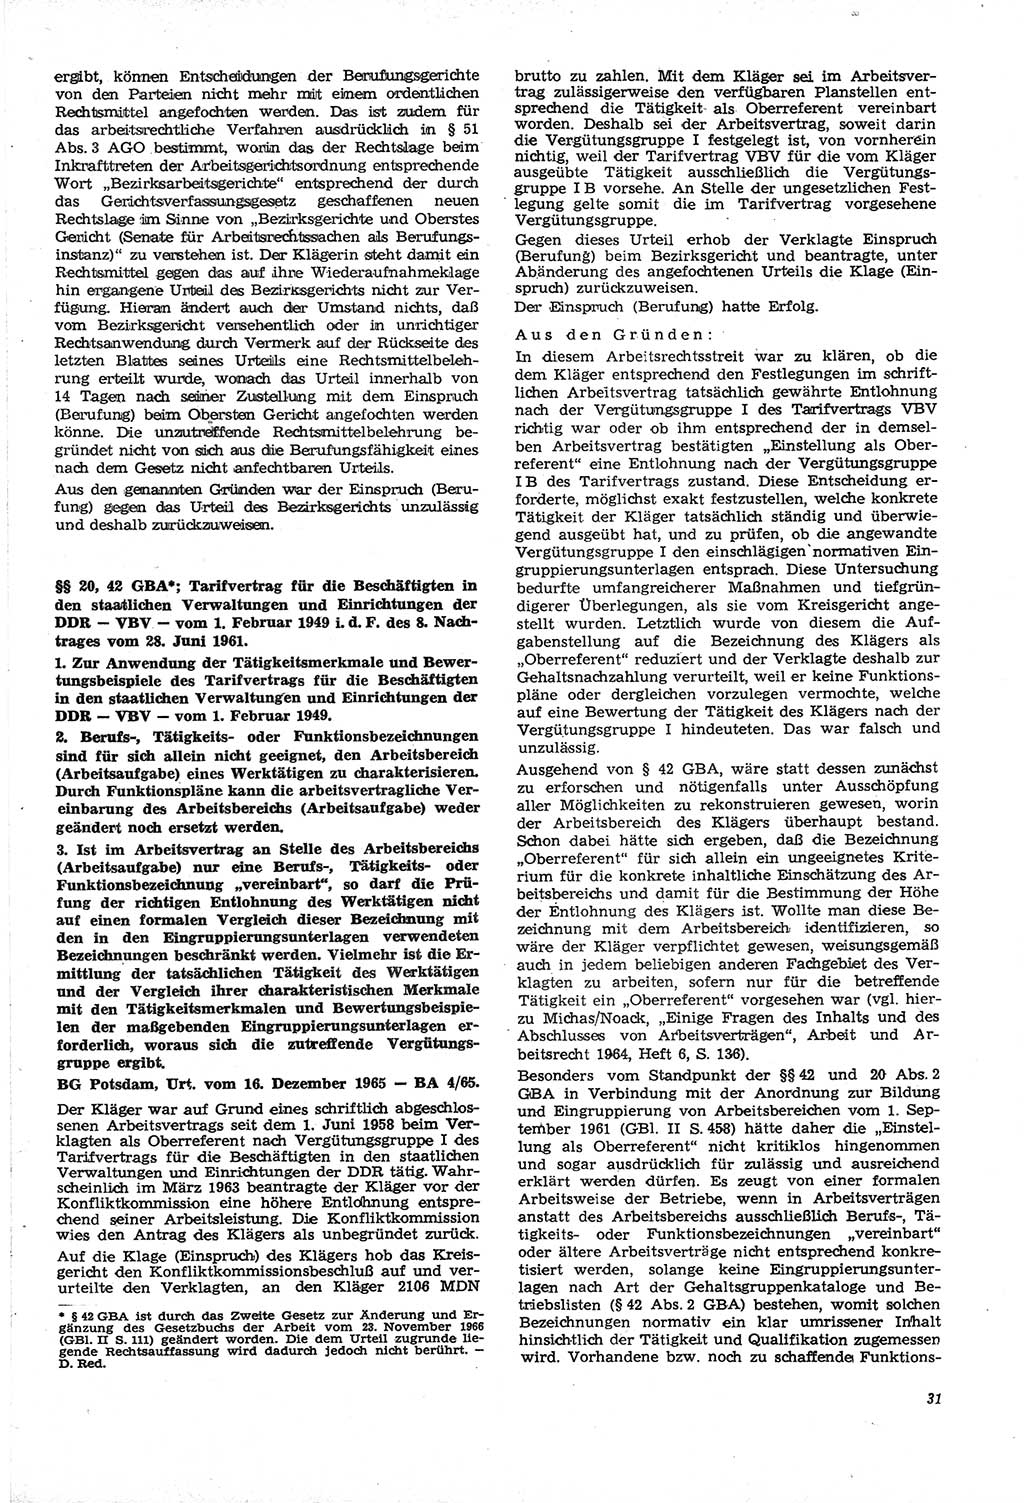 Neue Justiz (NJ), Zeitschrift für Recht und Rechtswissenschaft [Deutsche Demokratische Republik (DDR)], 21. Jahrgang 1967, Seite 31 (NJ DDR 1967, S. 31)